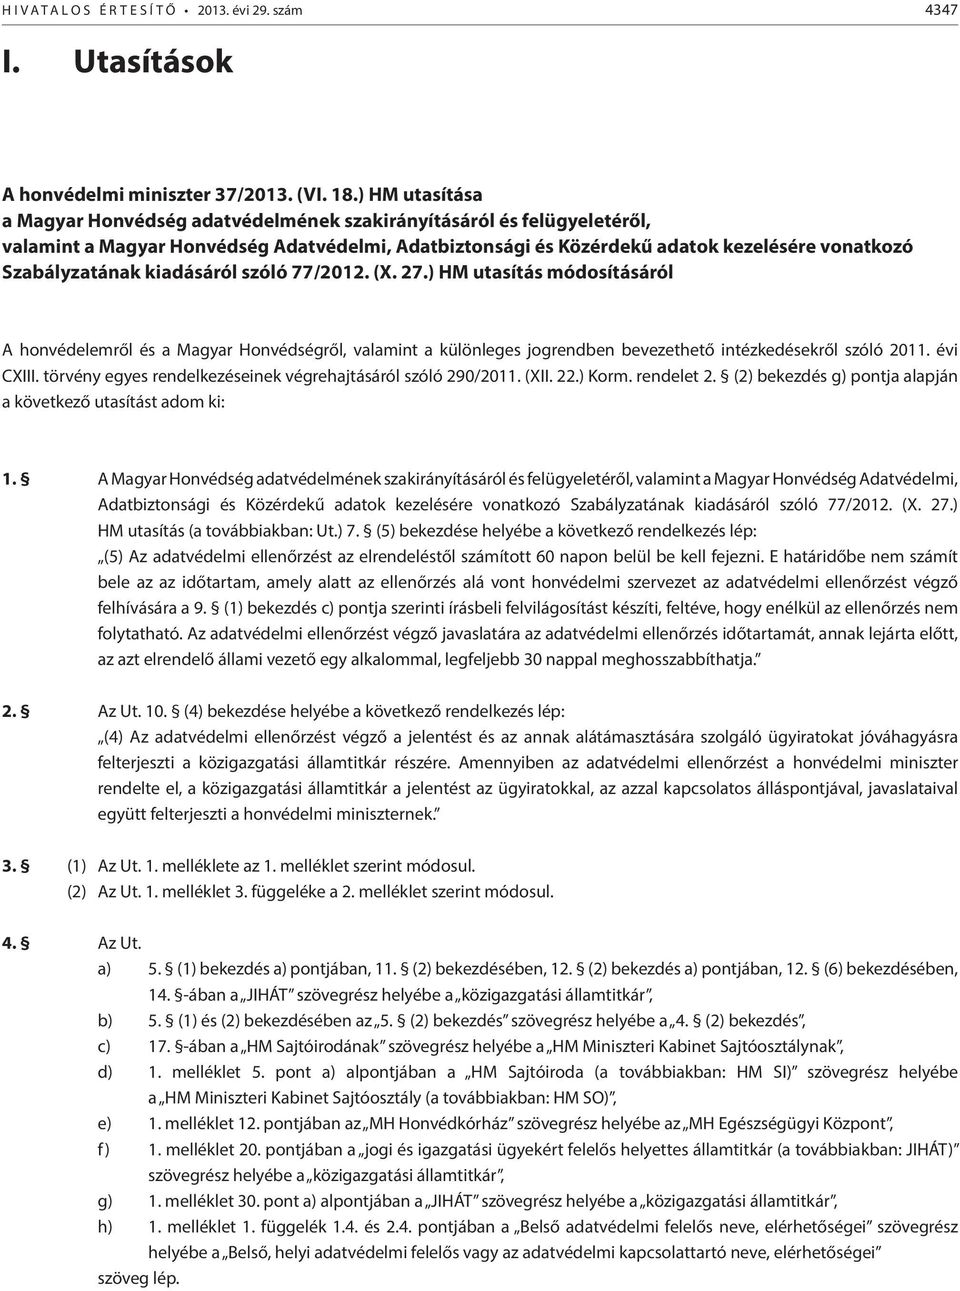 kiadásáról szóló 77/2012. (X. 27.) HM utasítás módosításáról A honvédelemről és a Magyar Honvédségről, valamint a különleges jogrendben bevezethető intézkedésekről szóló 2011. évi CXIII.